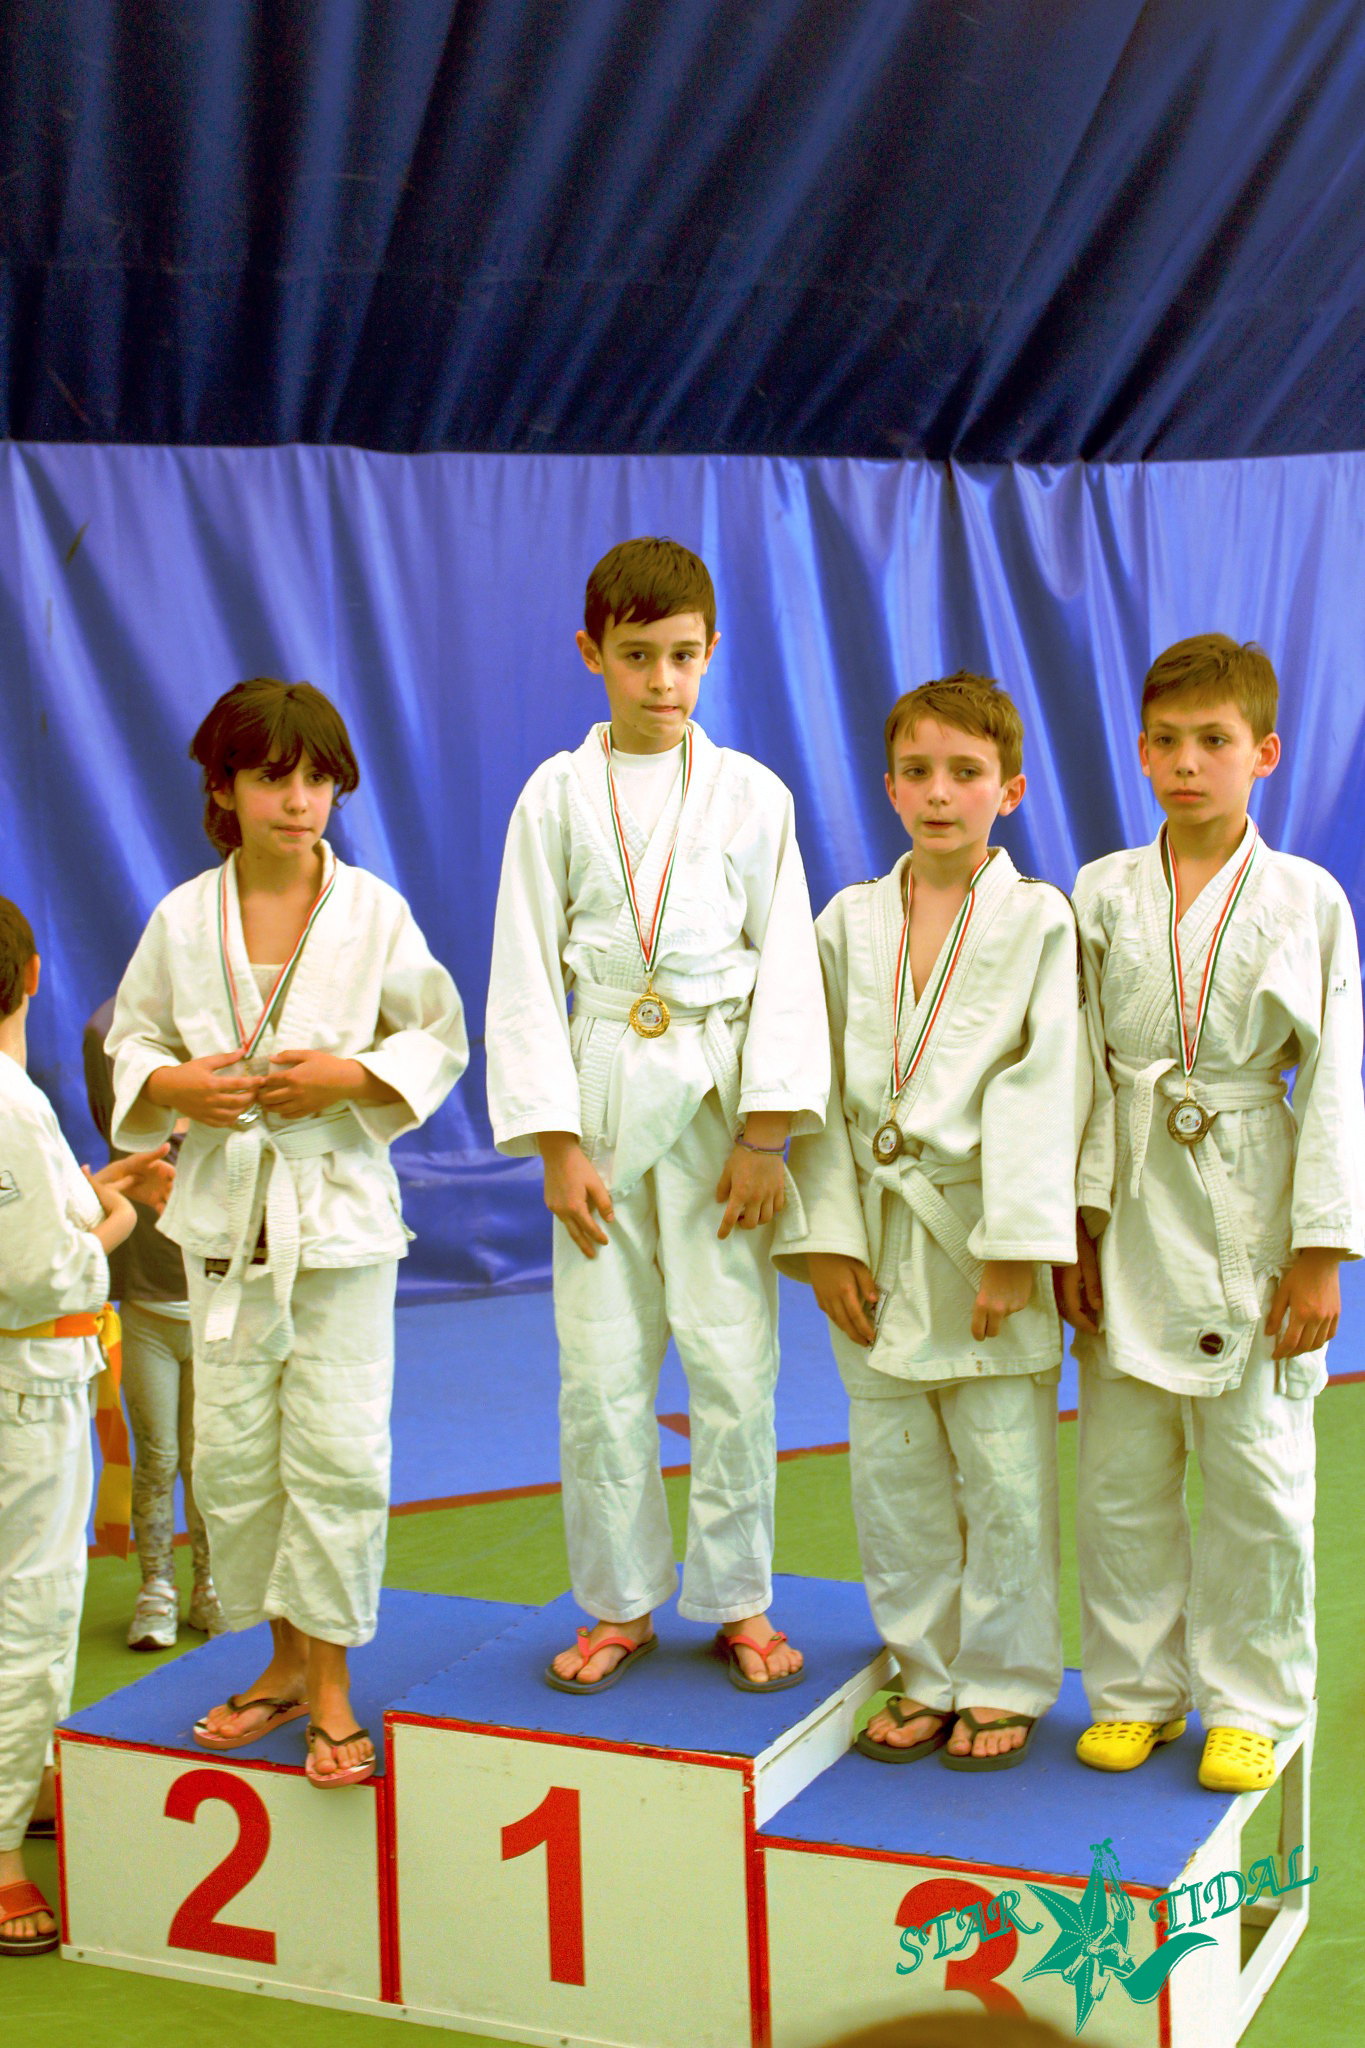 Emanuele Terzo nella manifestazione di judo